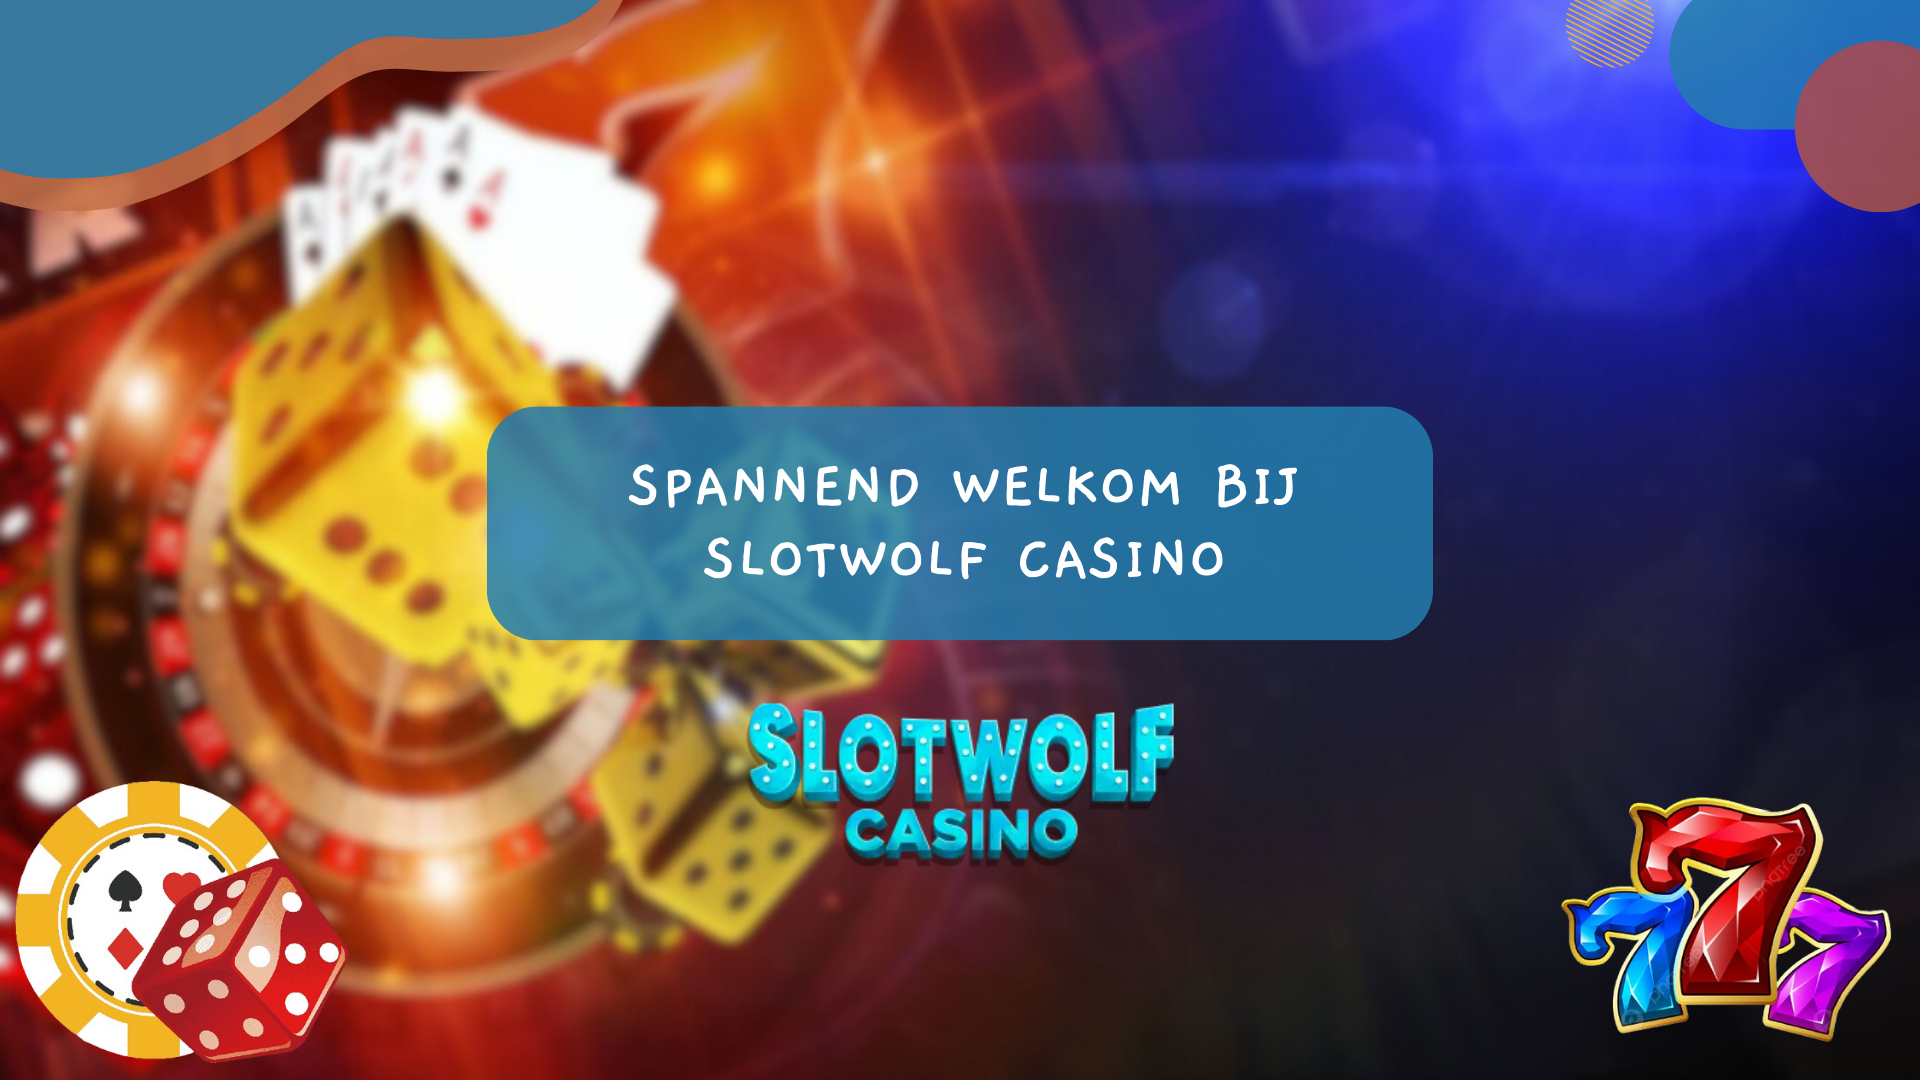 Spannend welkom bij SlotWolf Casino